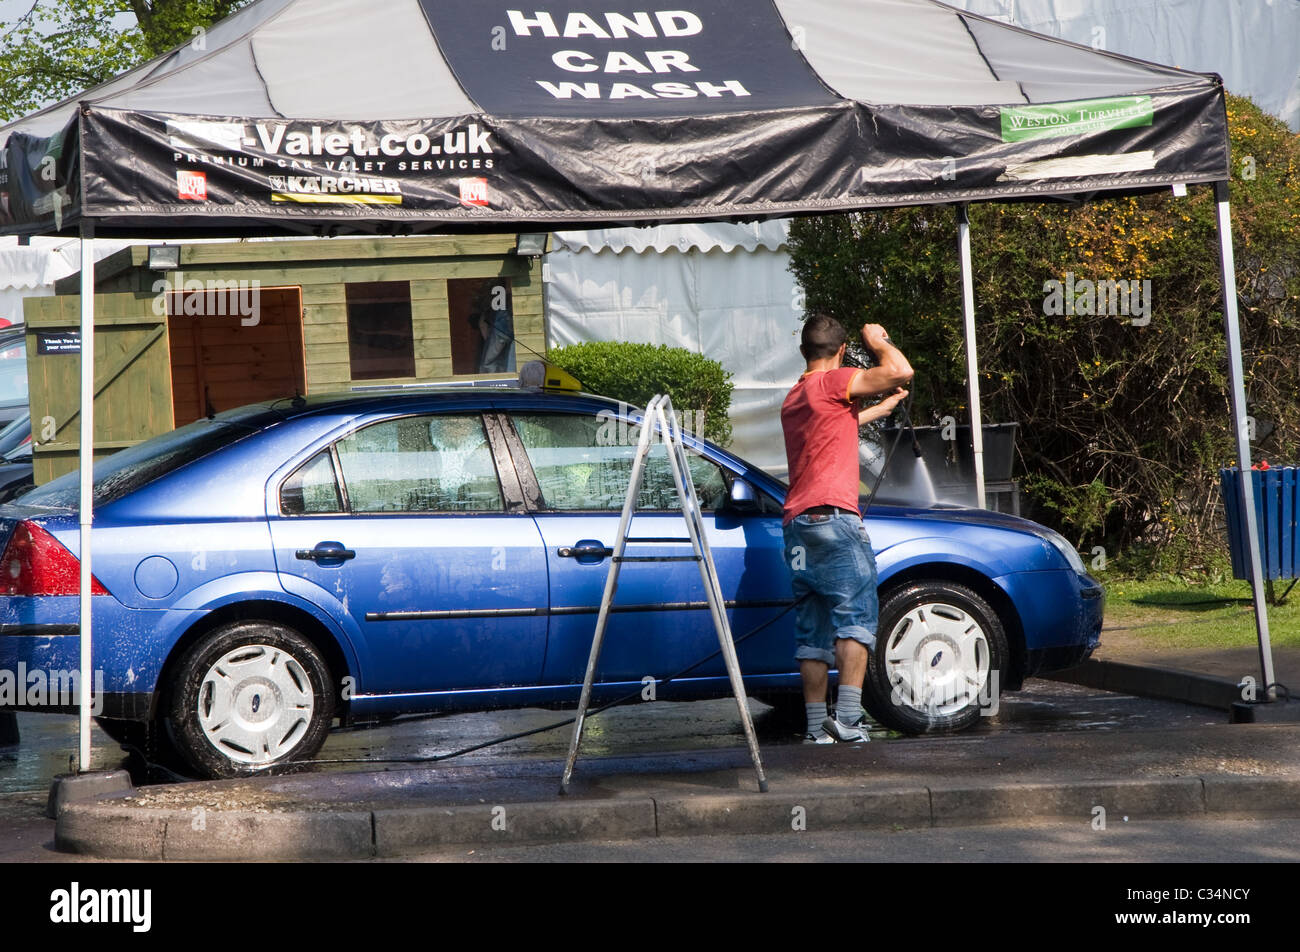 Hand car wash, St Albans, England, UK Stock Photo